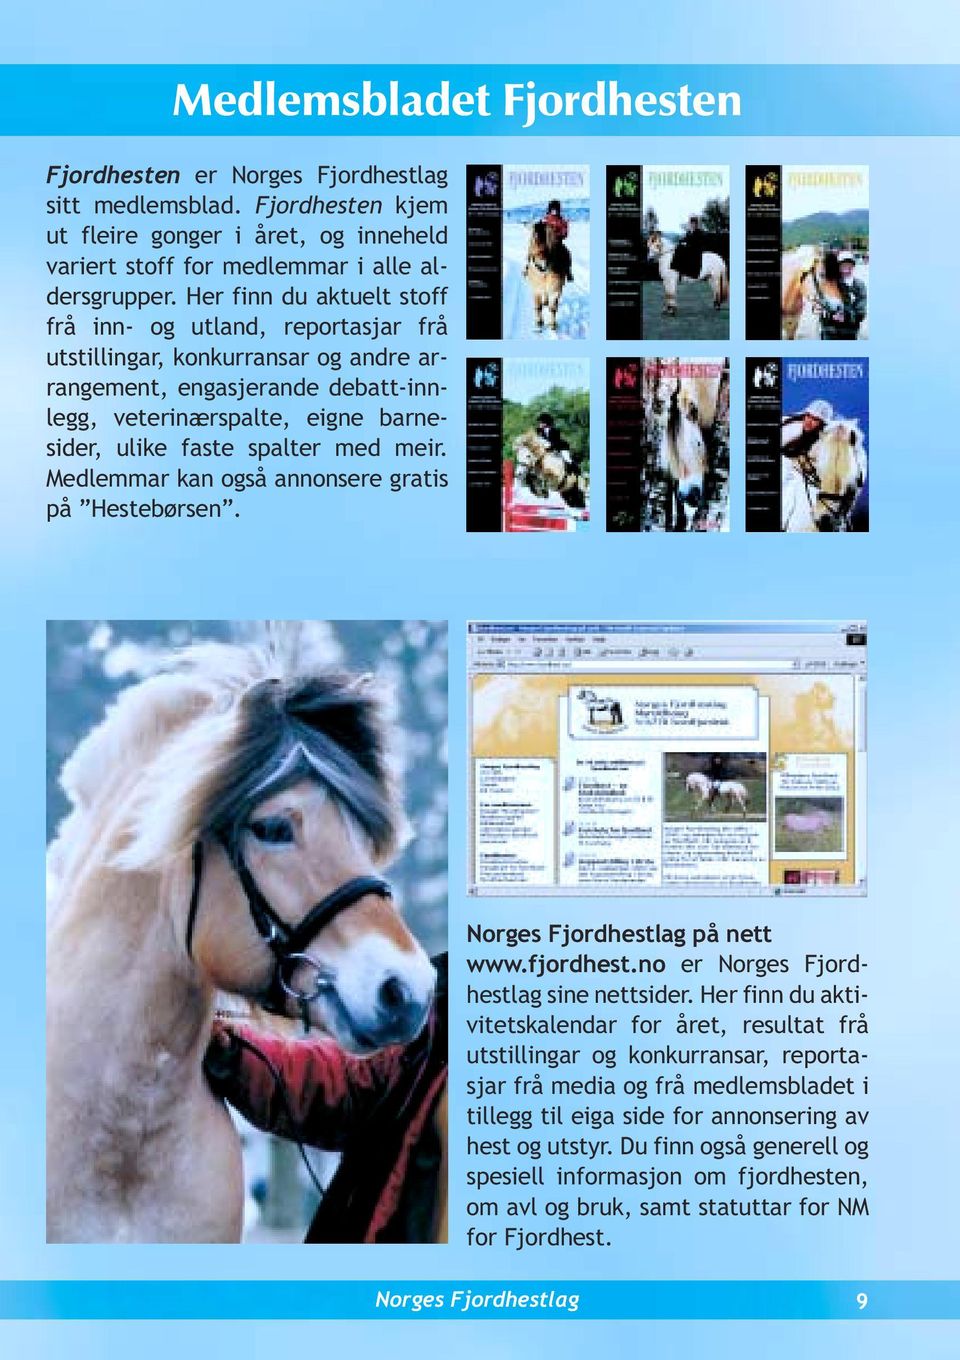 spalter med meir. Medlemmar kan også annonsere gratis på Hestebørsen. på nett www.fjordhest.no er sine nettsider.